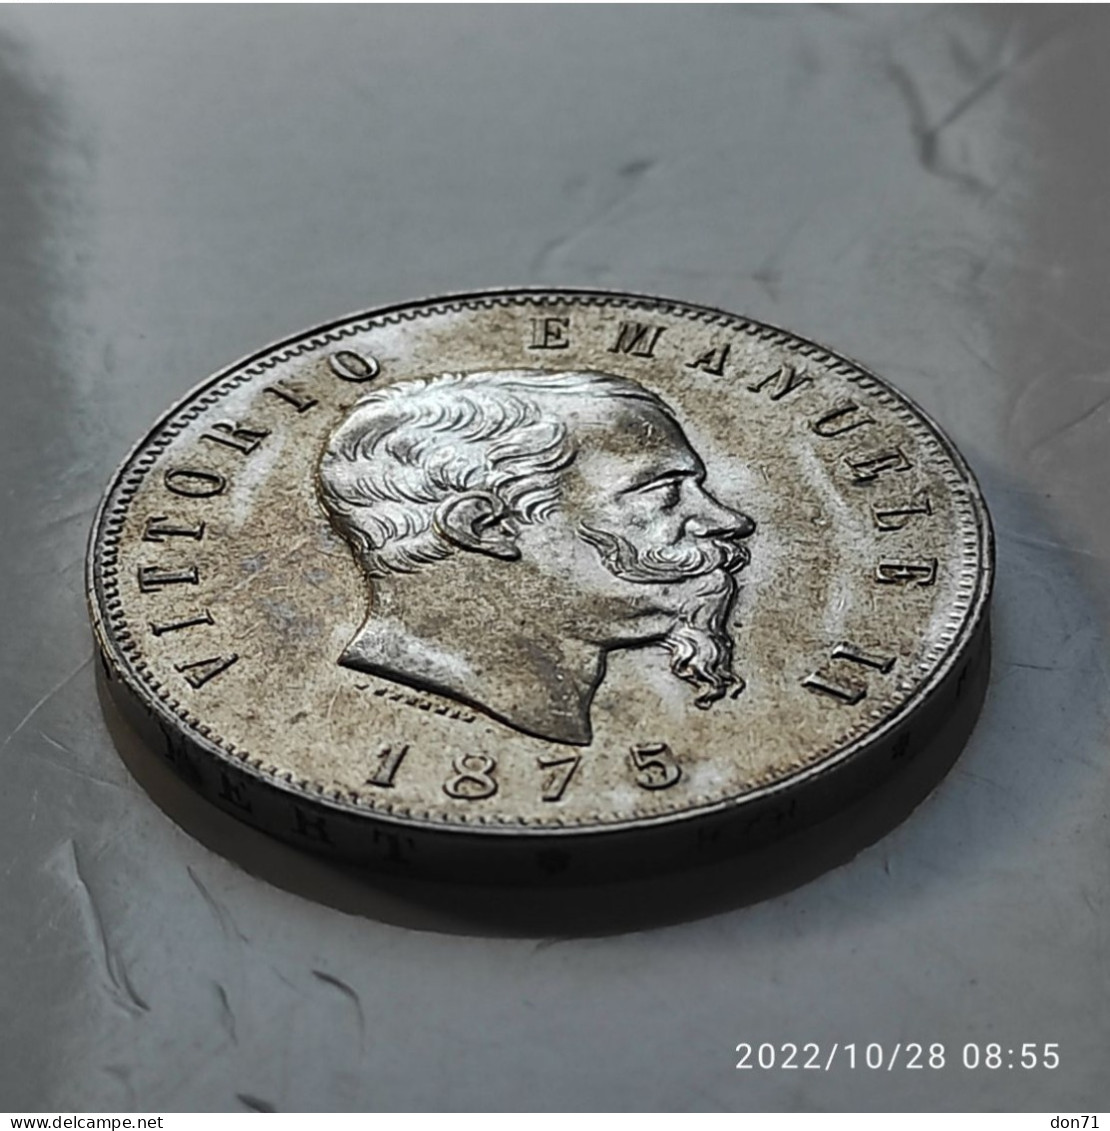 Italia Regno - 5 lire 1875 (qFDC)